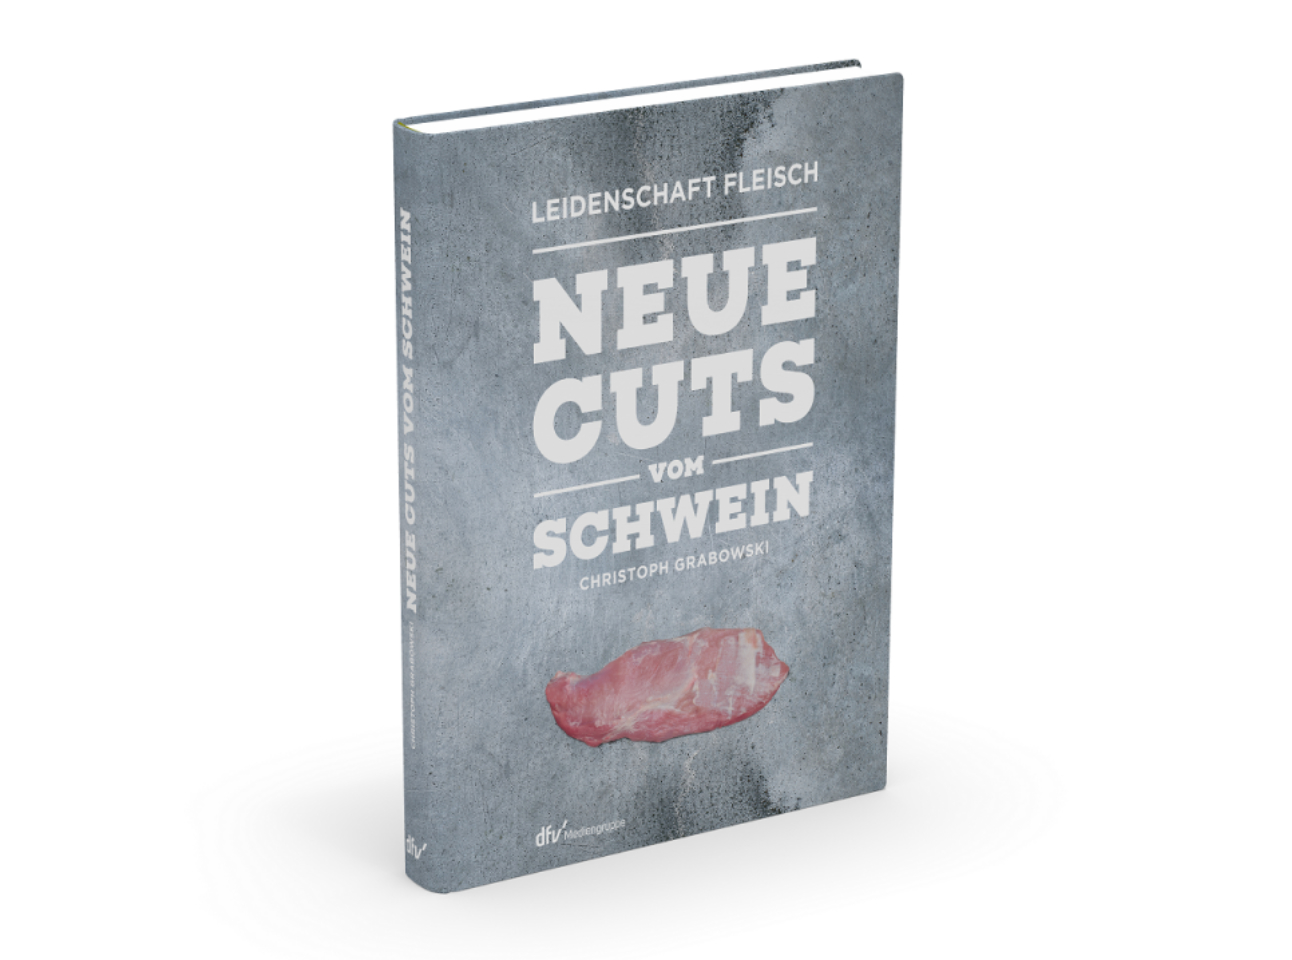 Neue Cuts vom Schwein, Grabowski, Christoph